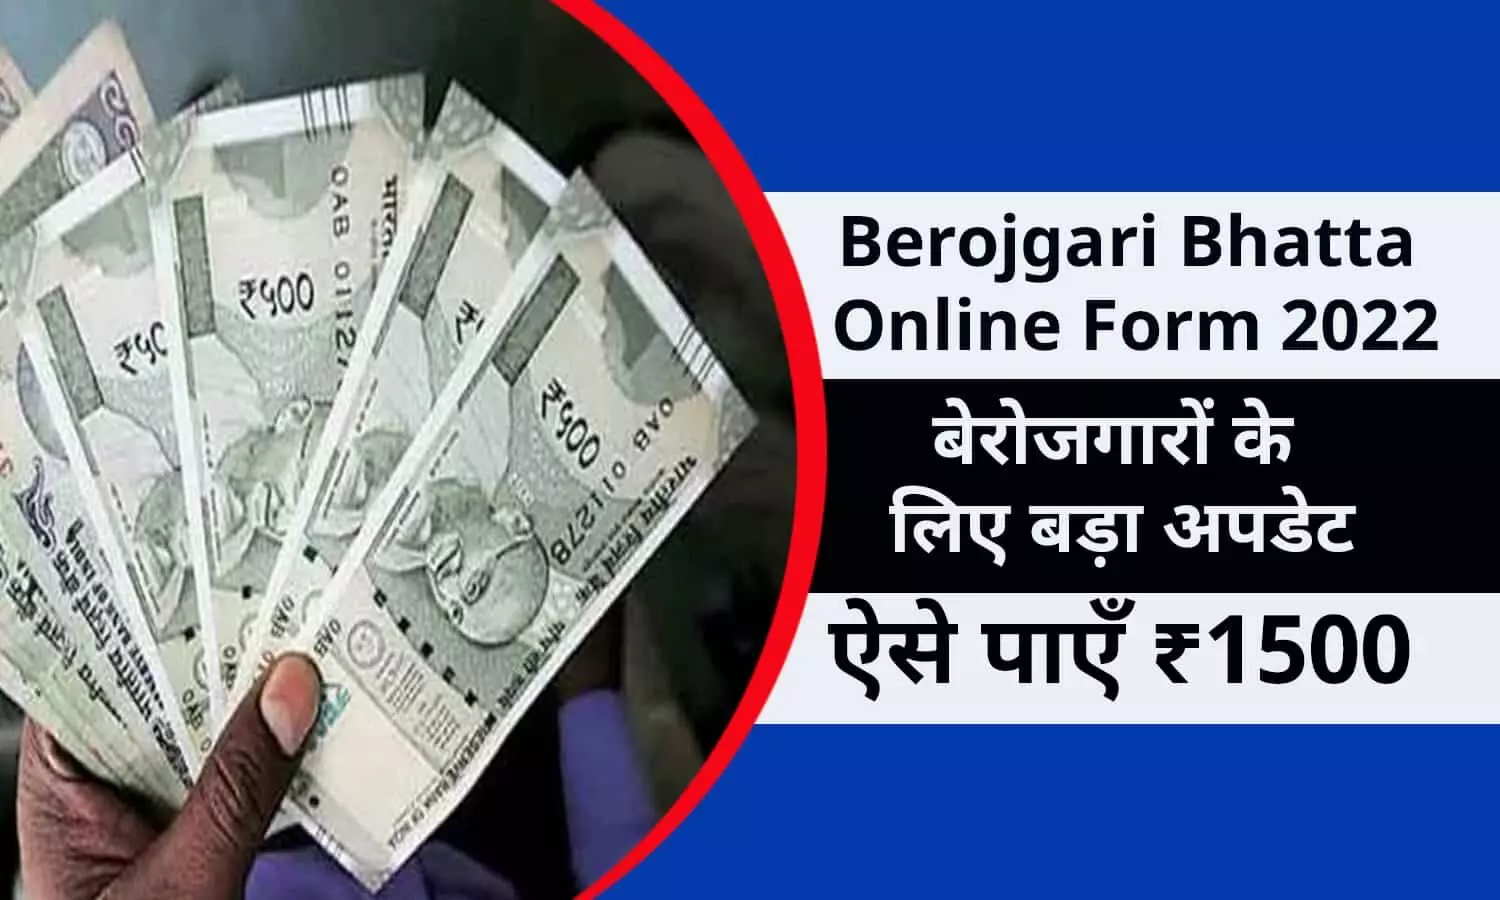 Berojgari Bhatta Online Form 2022 In Hindi: खुशखबरी! बेरोजगारों के लिए बड़ा अपडेट, ऑनलाइन फ़ॉर्म शुरू, ऐसे पाएँ ₹1500, जाने फटाफट